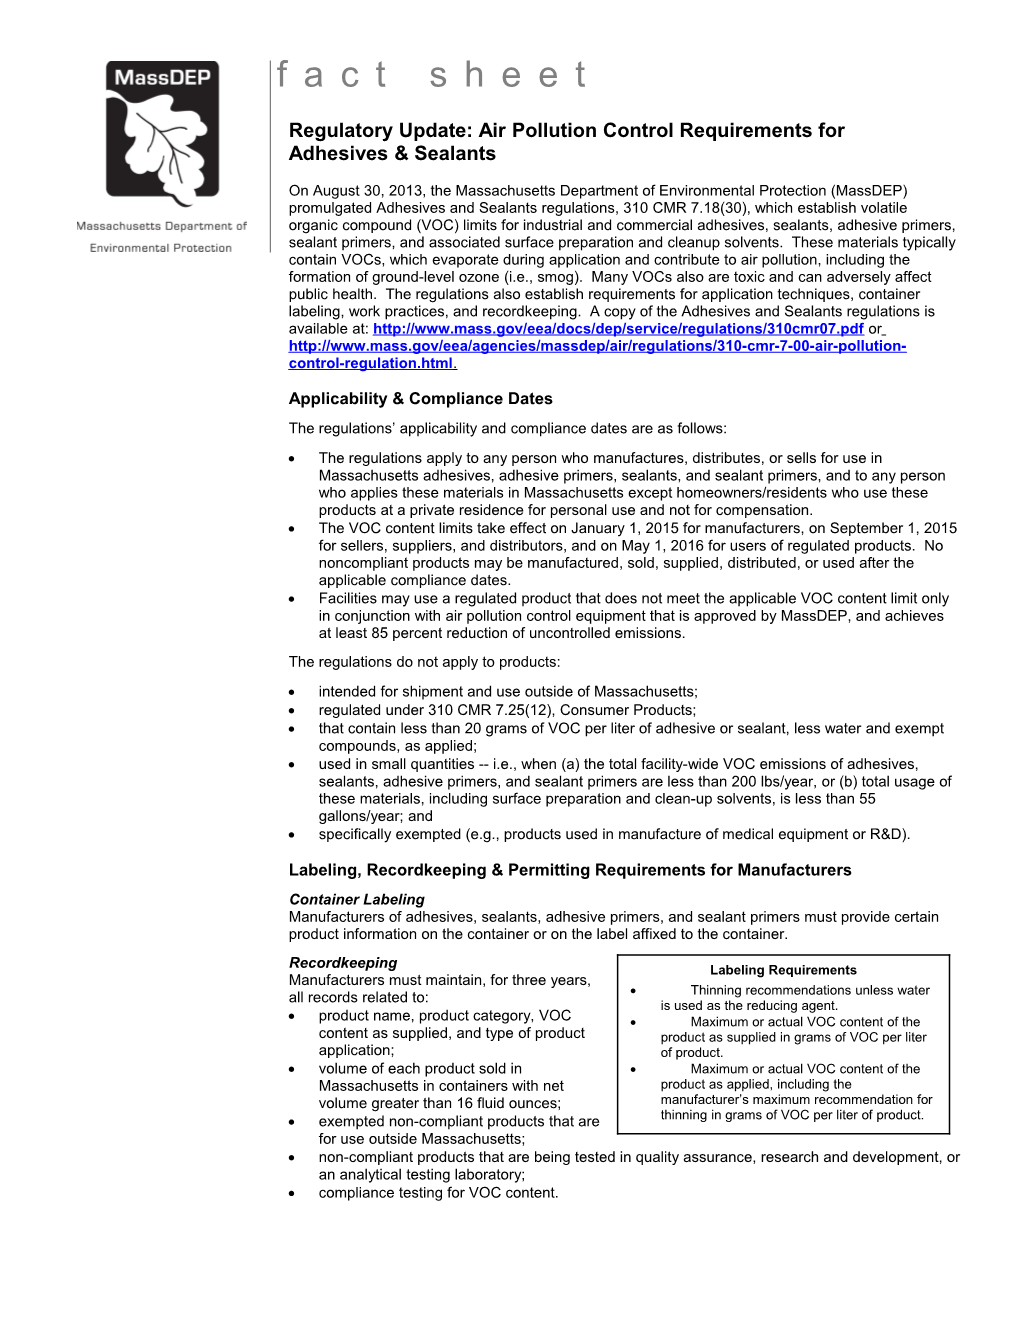 2013 Adhesives and Sealants Regulations Fact Sheet